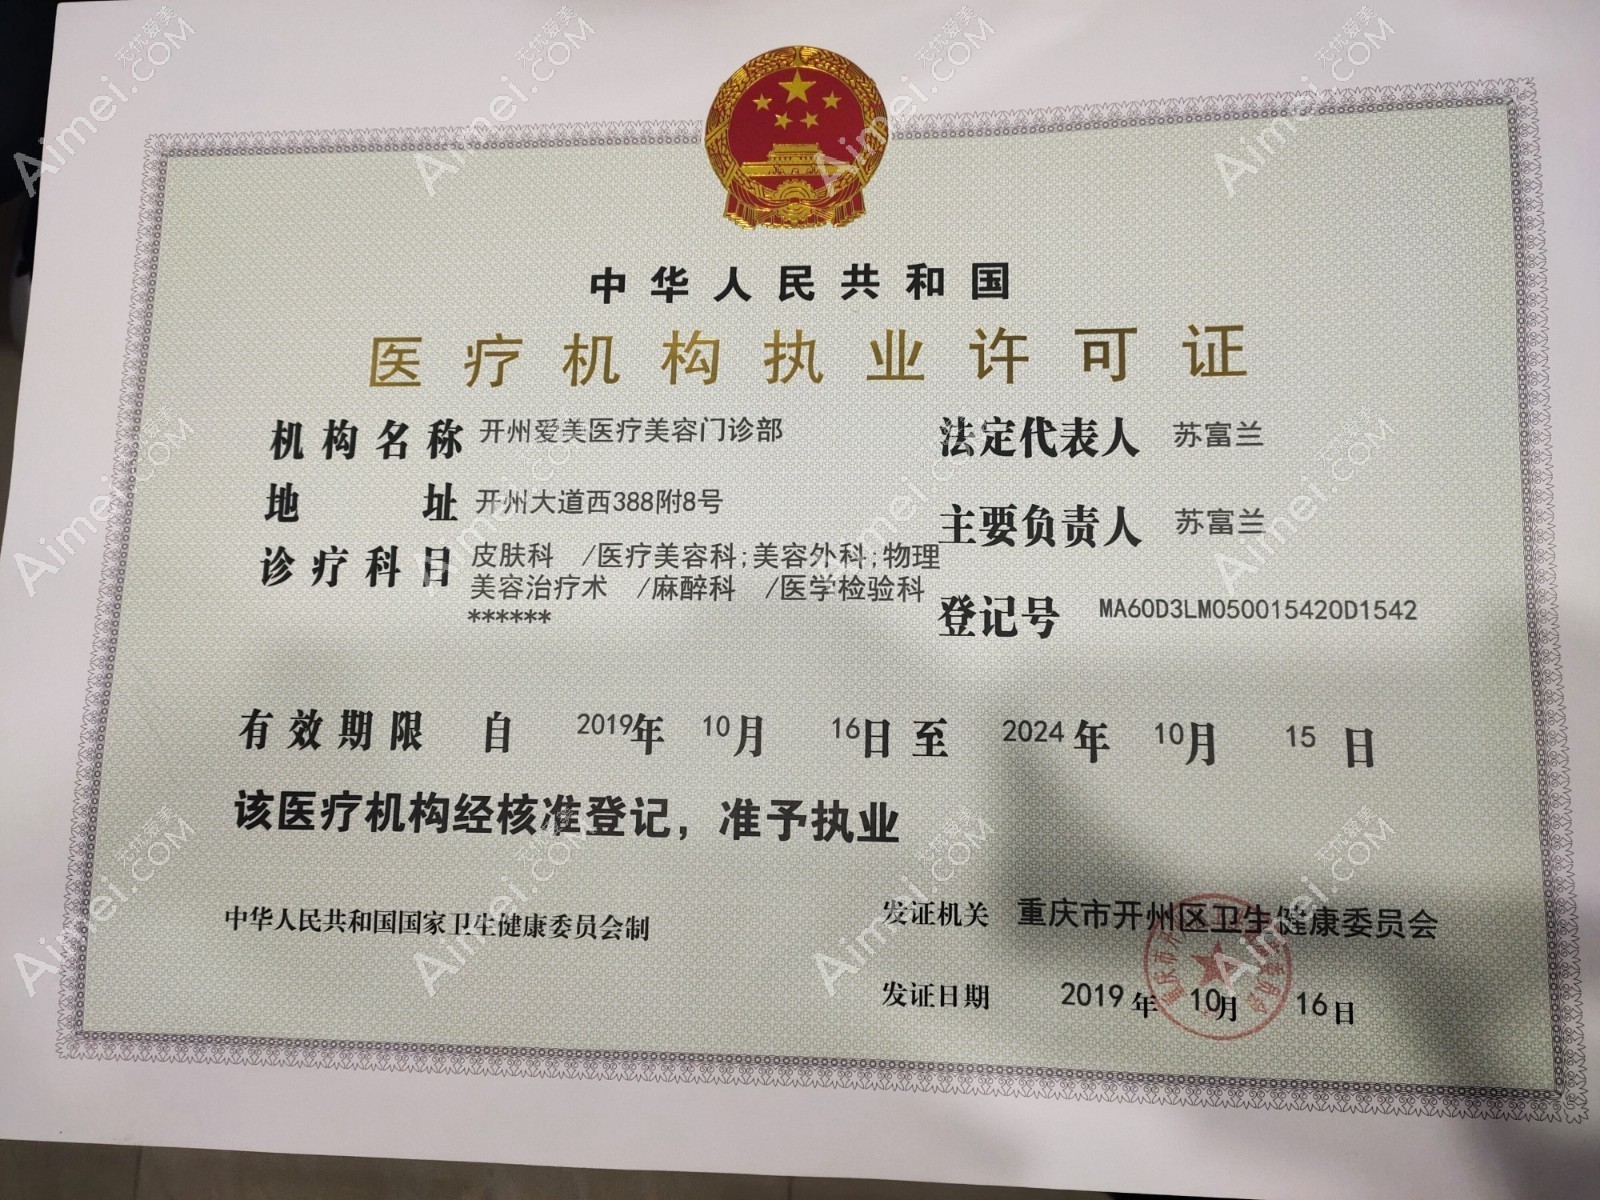 重庆爱美医疗美容门诊部医疗机构执业许可证